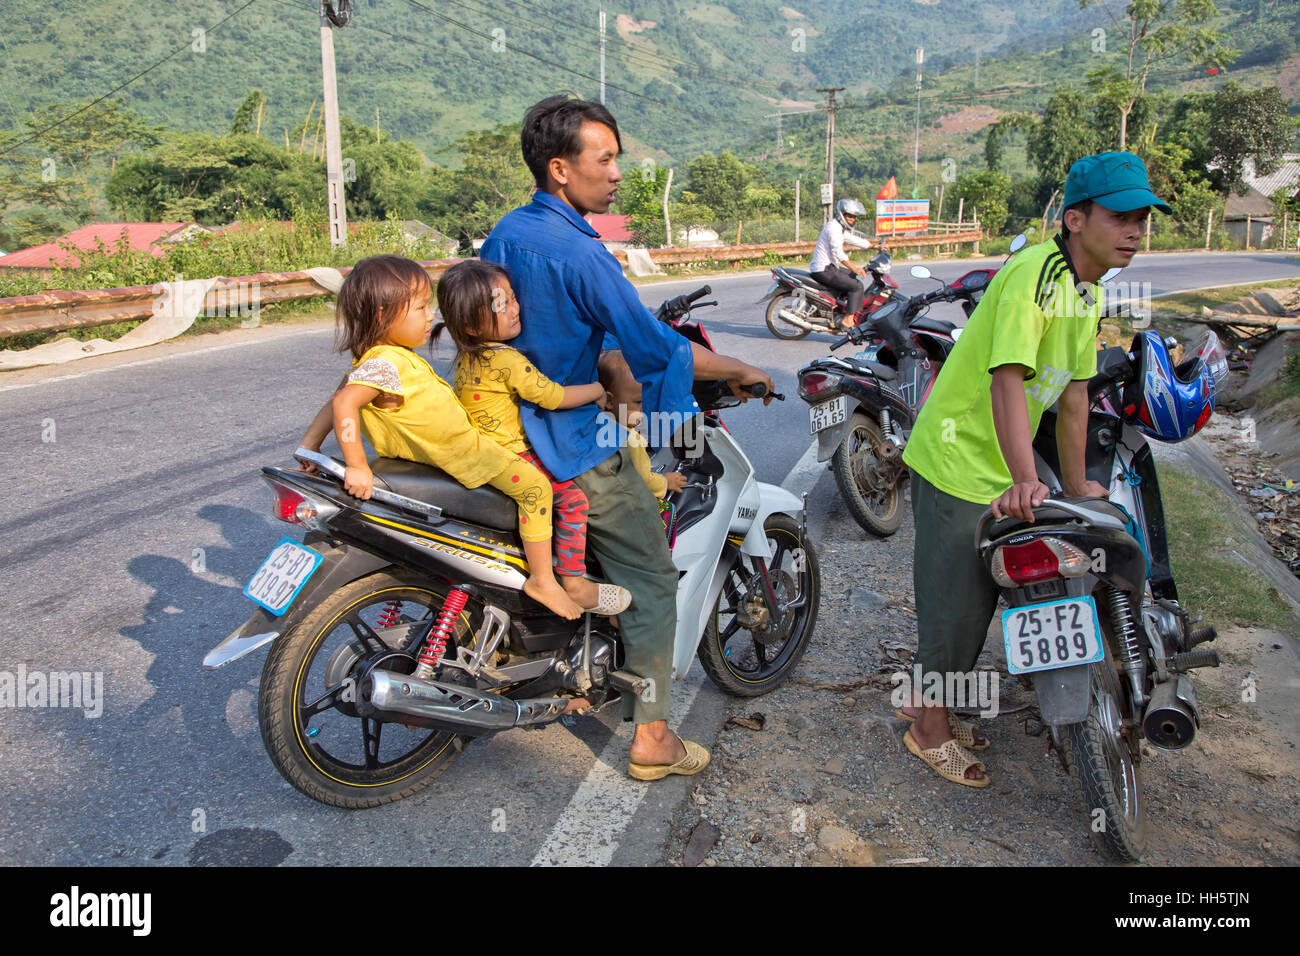 Père transportant trois jeunes enfants, s'est arrêté sur une route de campagne, ayant une conversation par farmers market, Sirius Yamaha Moto RC. Banque D'Images